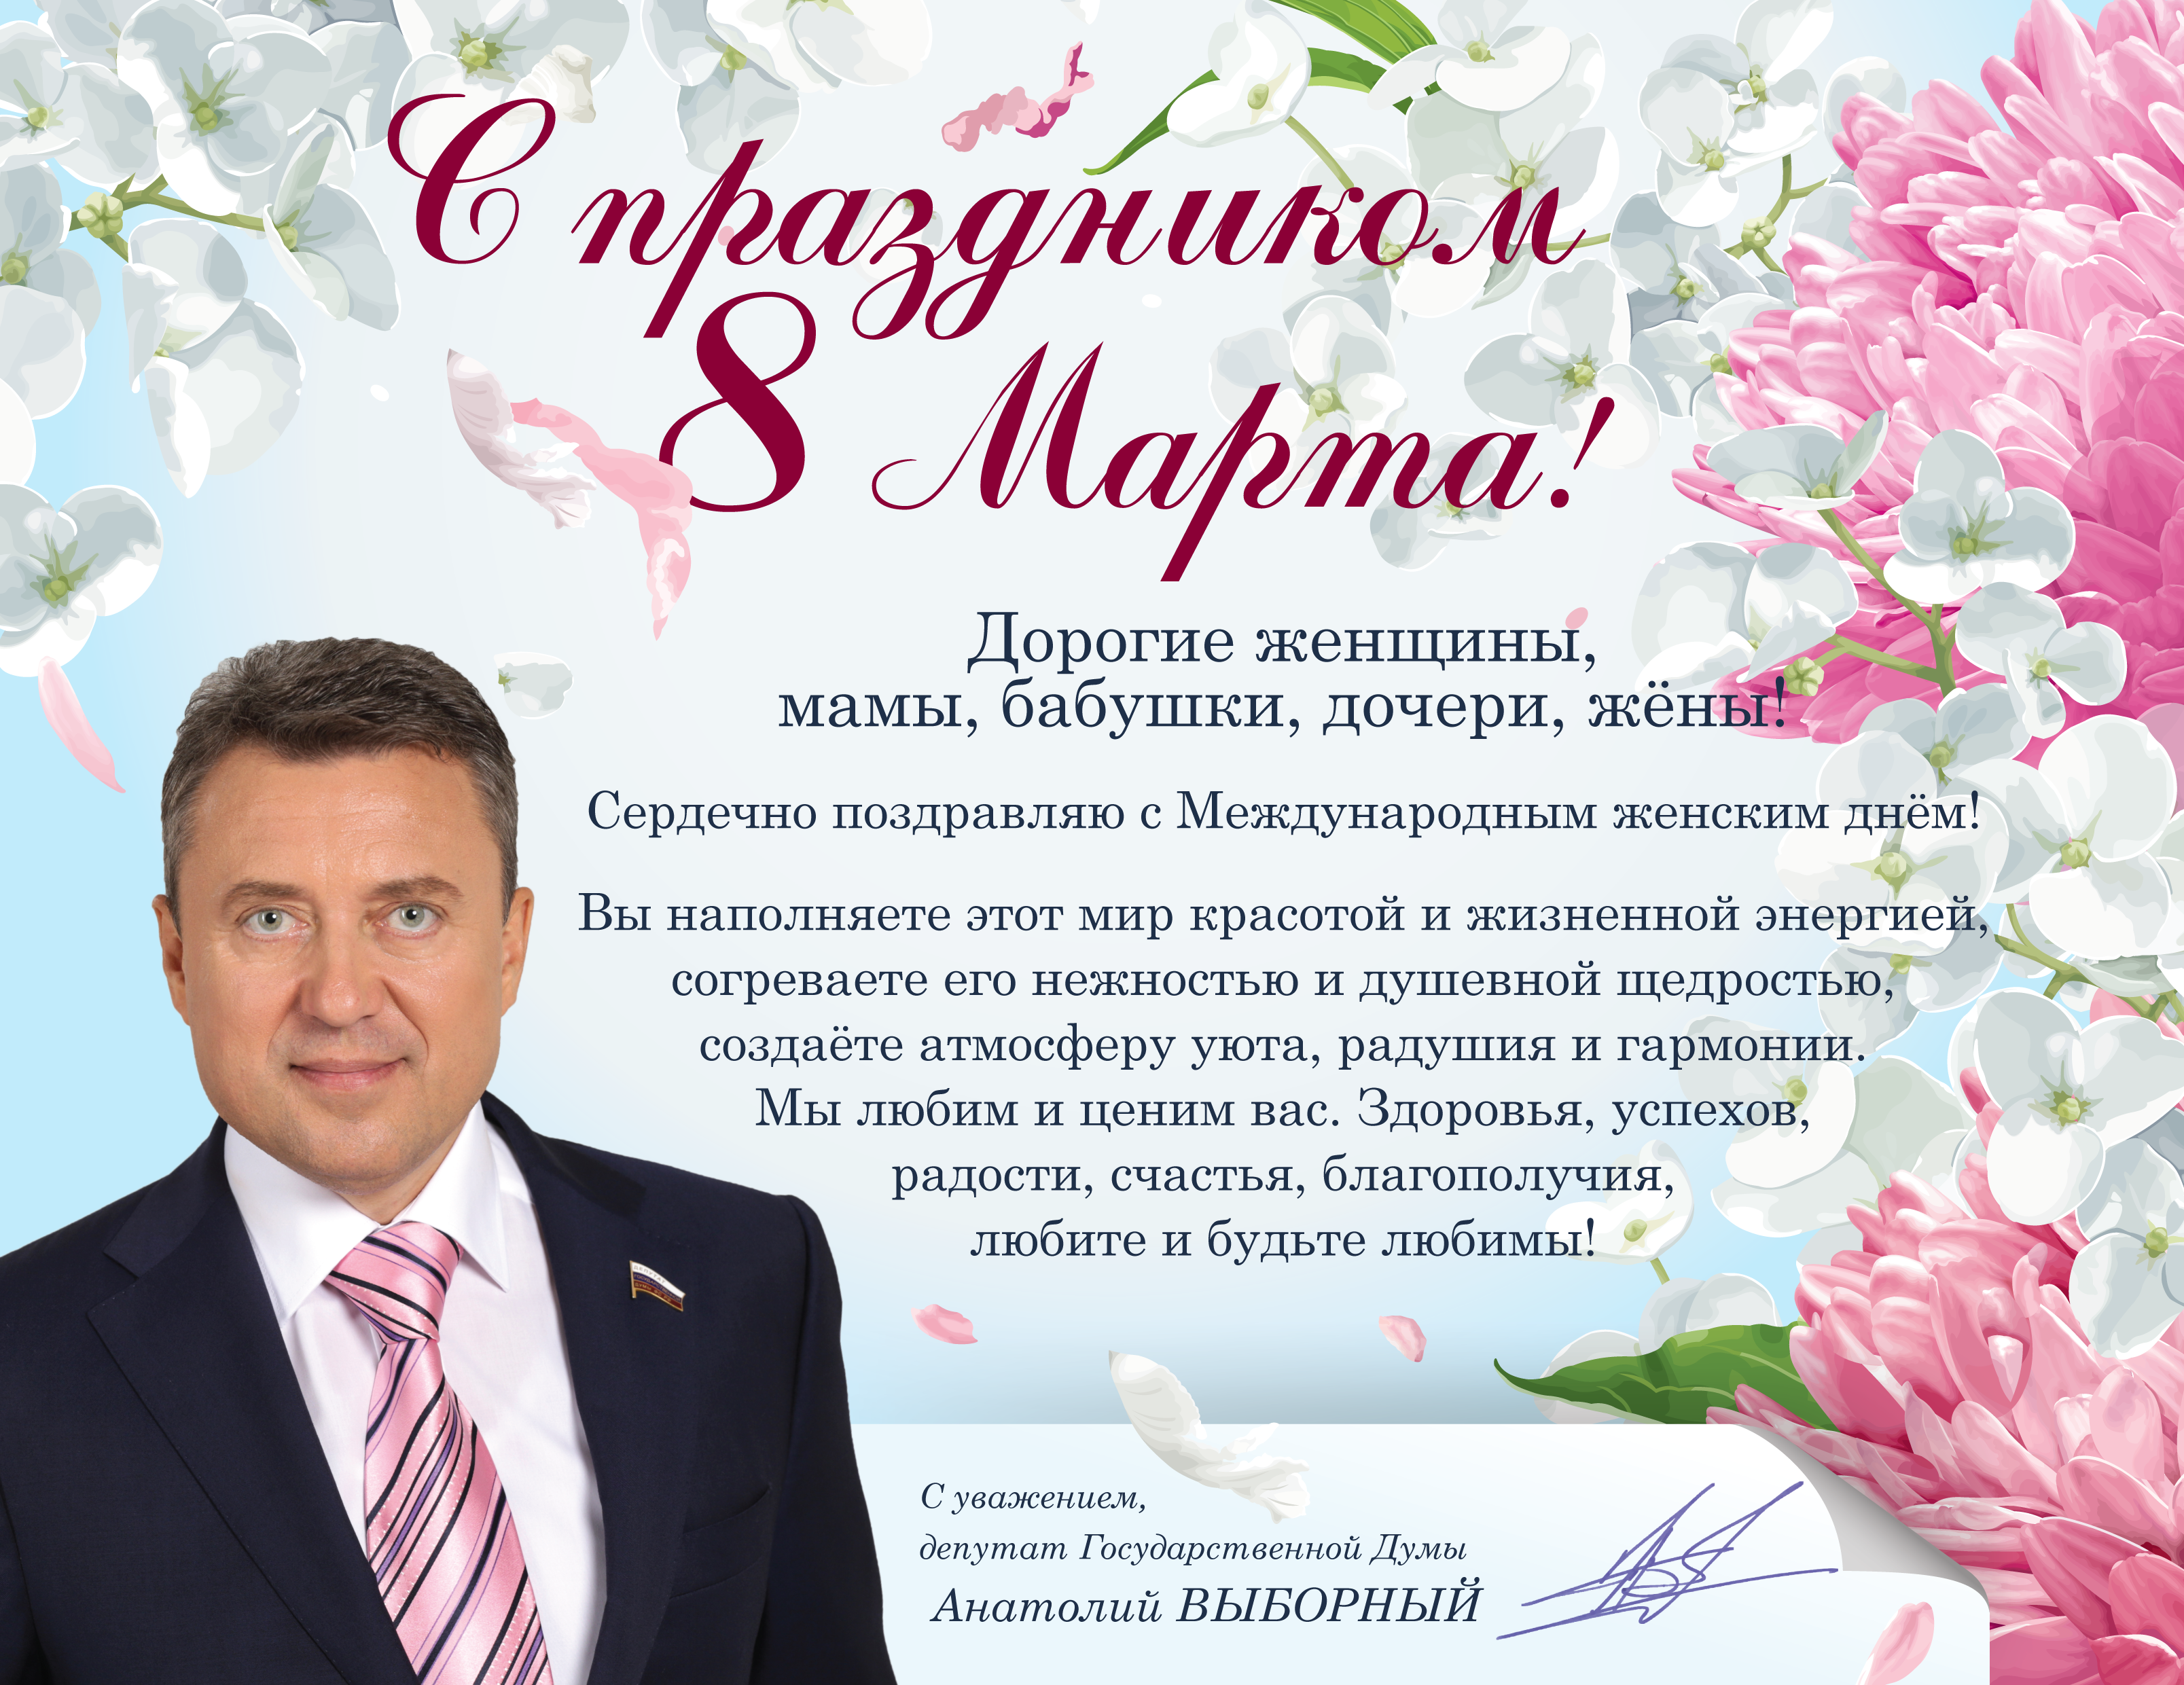 Поздравление от депутата Государственной Думы Анатолия Выборного